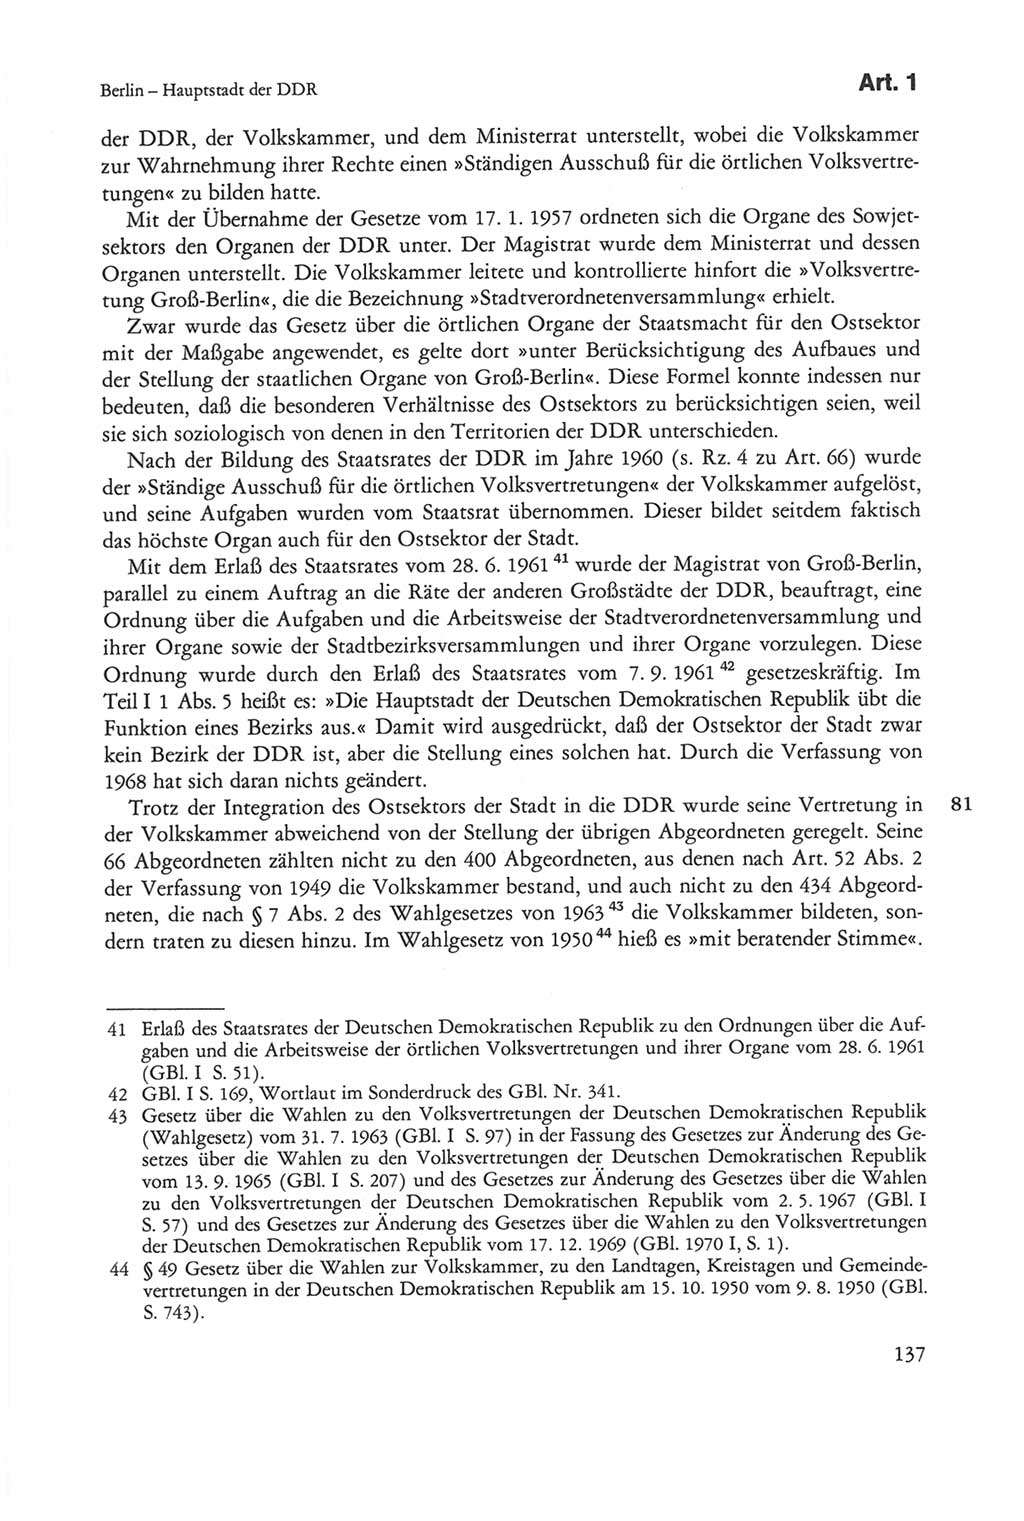 Die sozialistische Verfassung der Deutschen Demokratischen Republik (DDR), Kommentar mit einem Nachtrag 1997, Seite 137 (Soz. Verf. DDR Komm. Nachtr. 1997, S. 137)